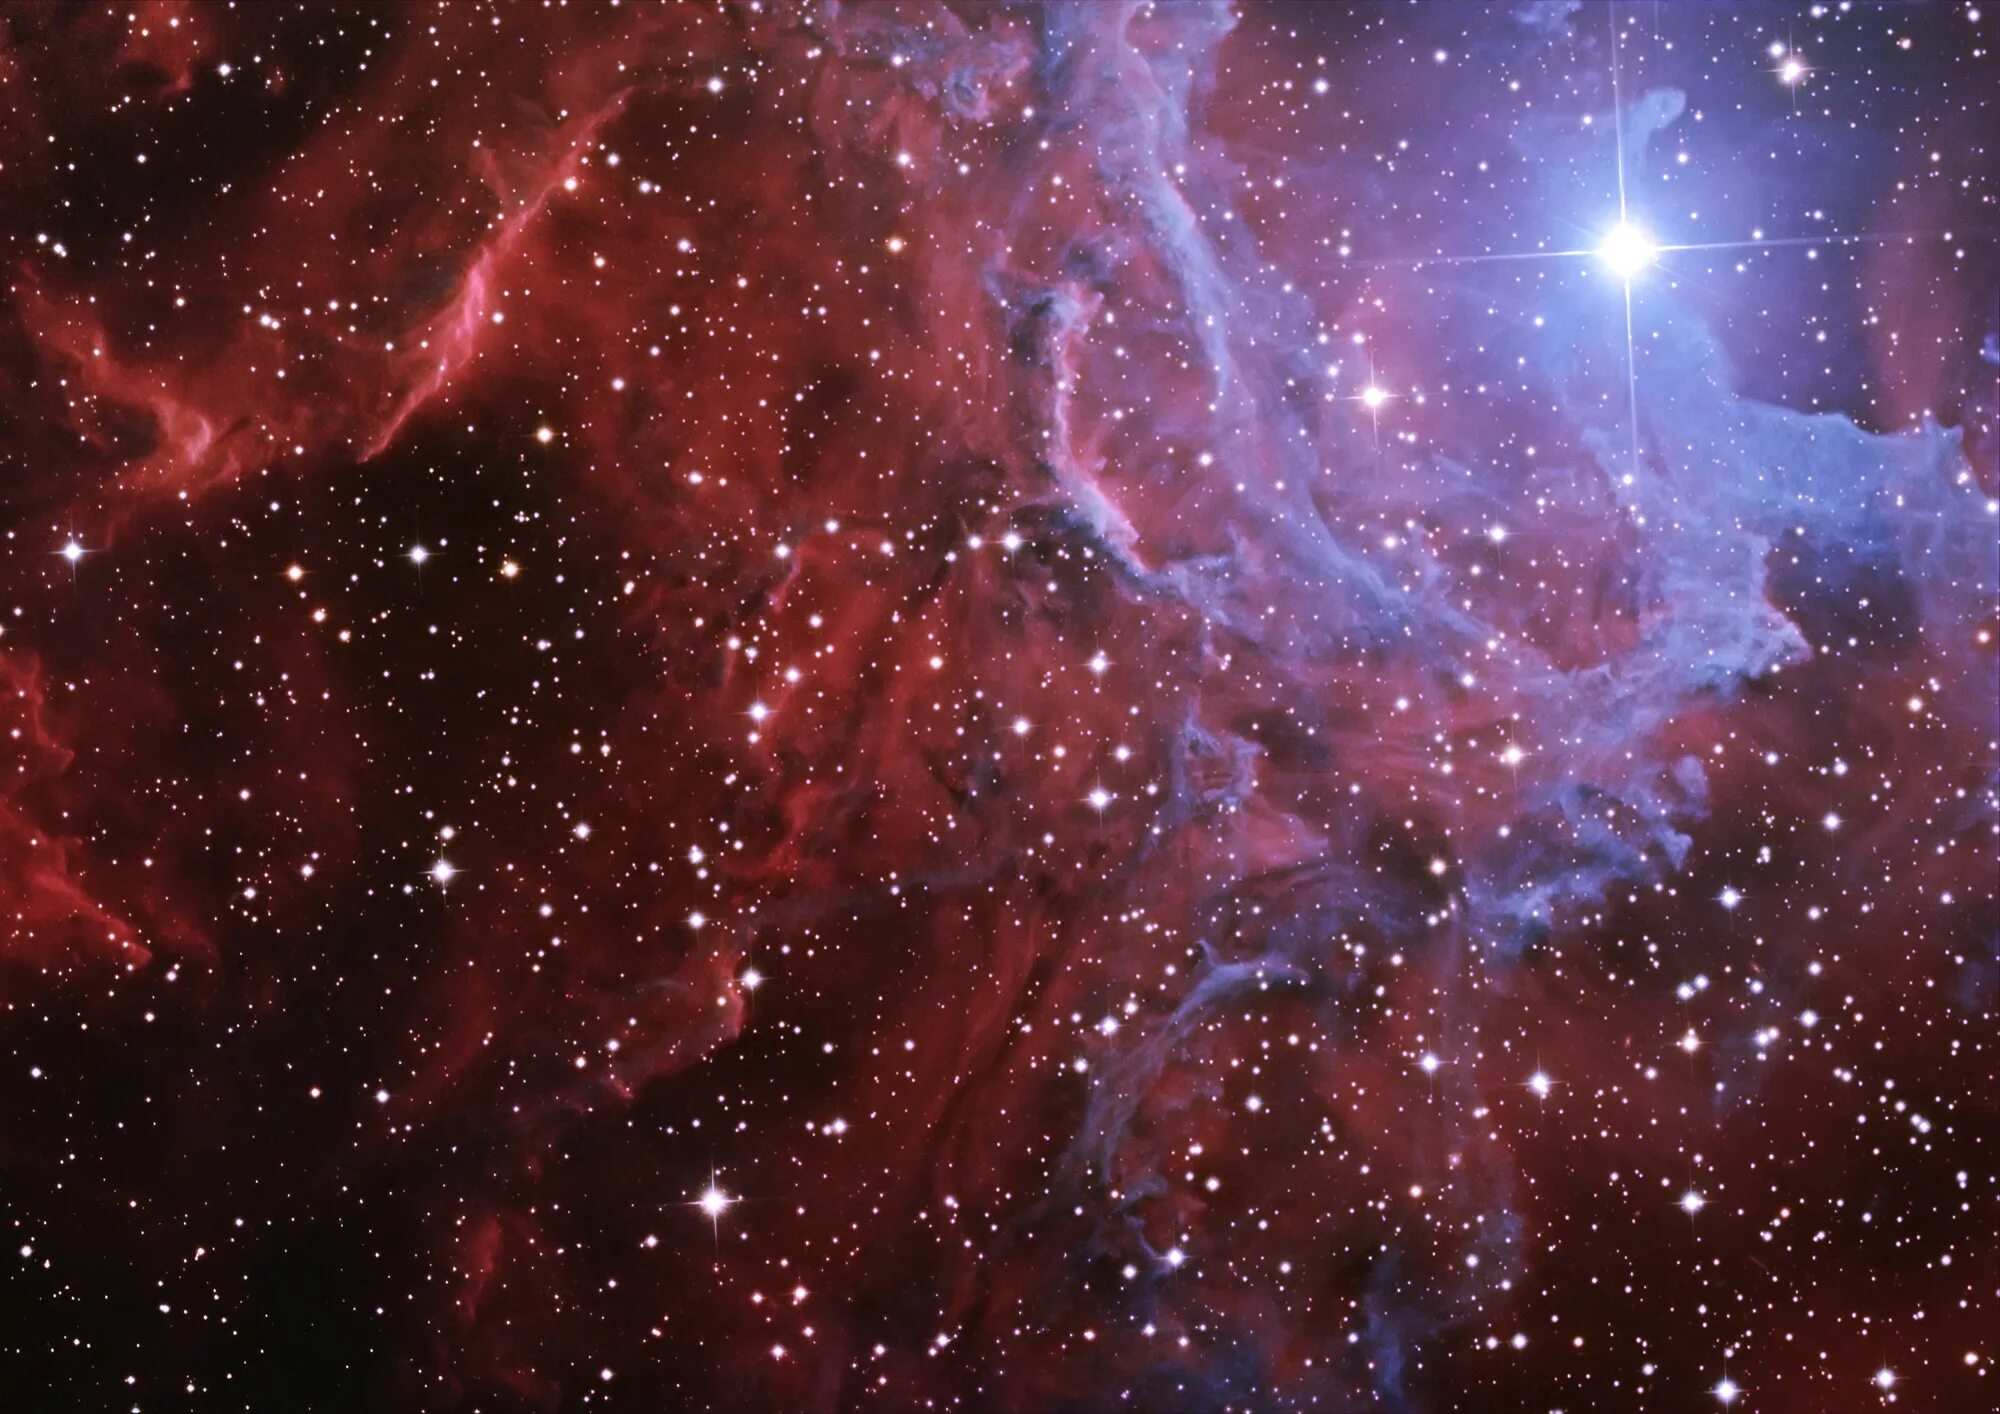 Ic 405 туманность. Звездная туманность. Туманности в космосе. Красивый космос. Изображение 2000 2000 пикселей